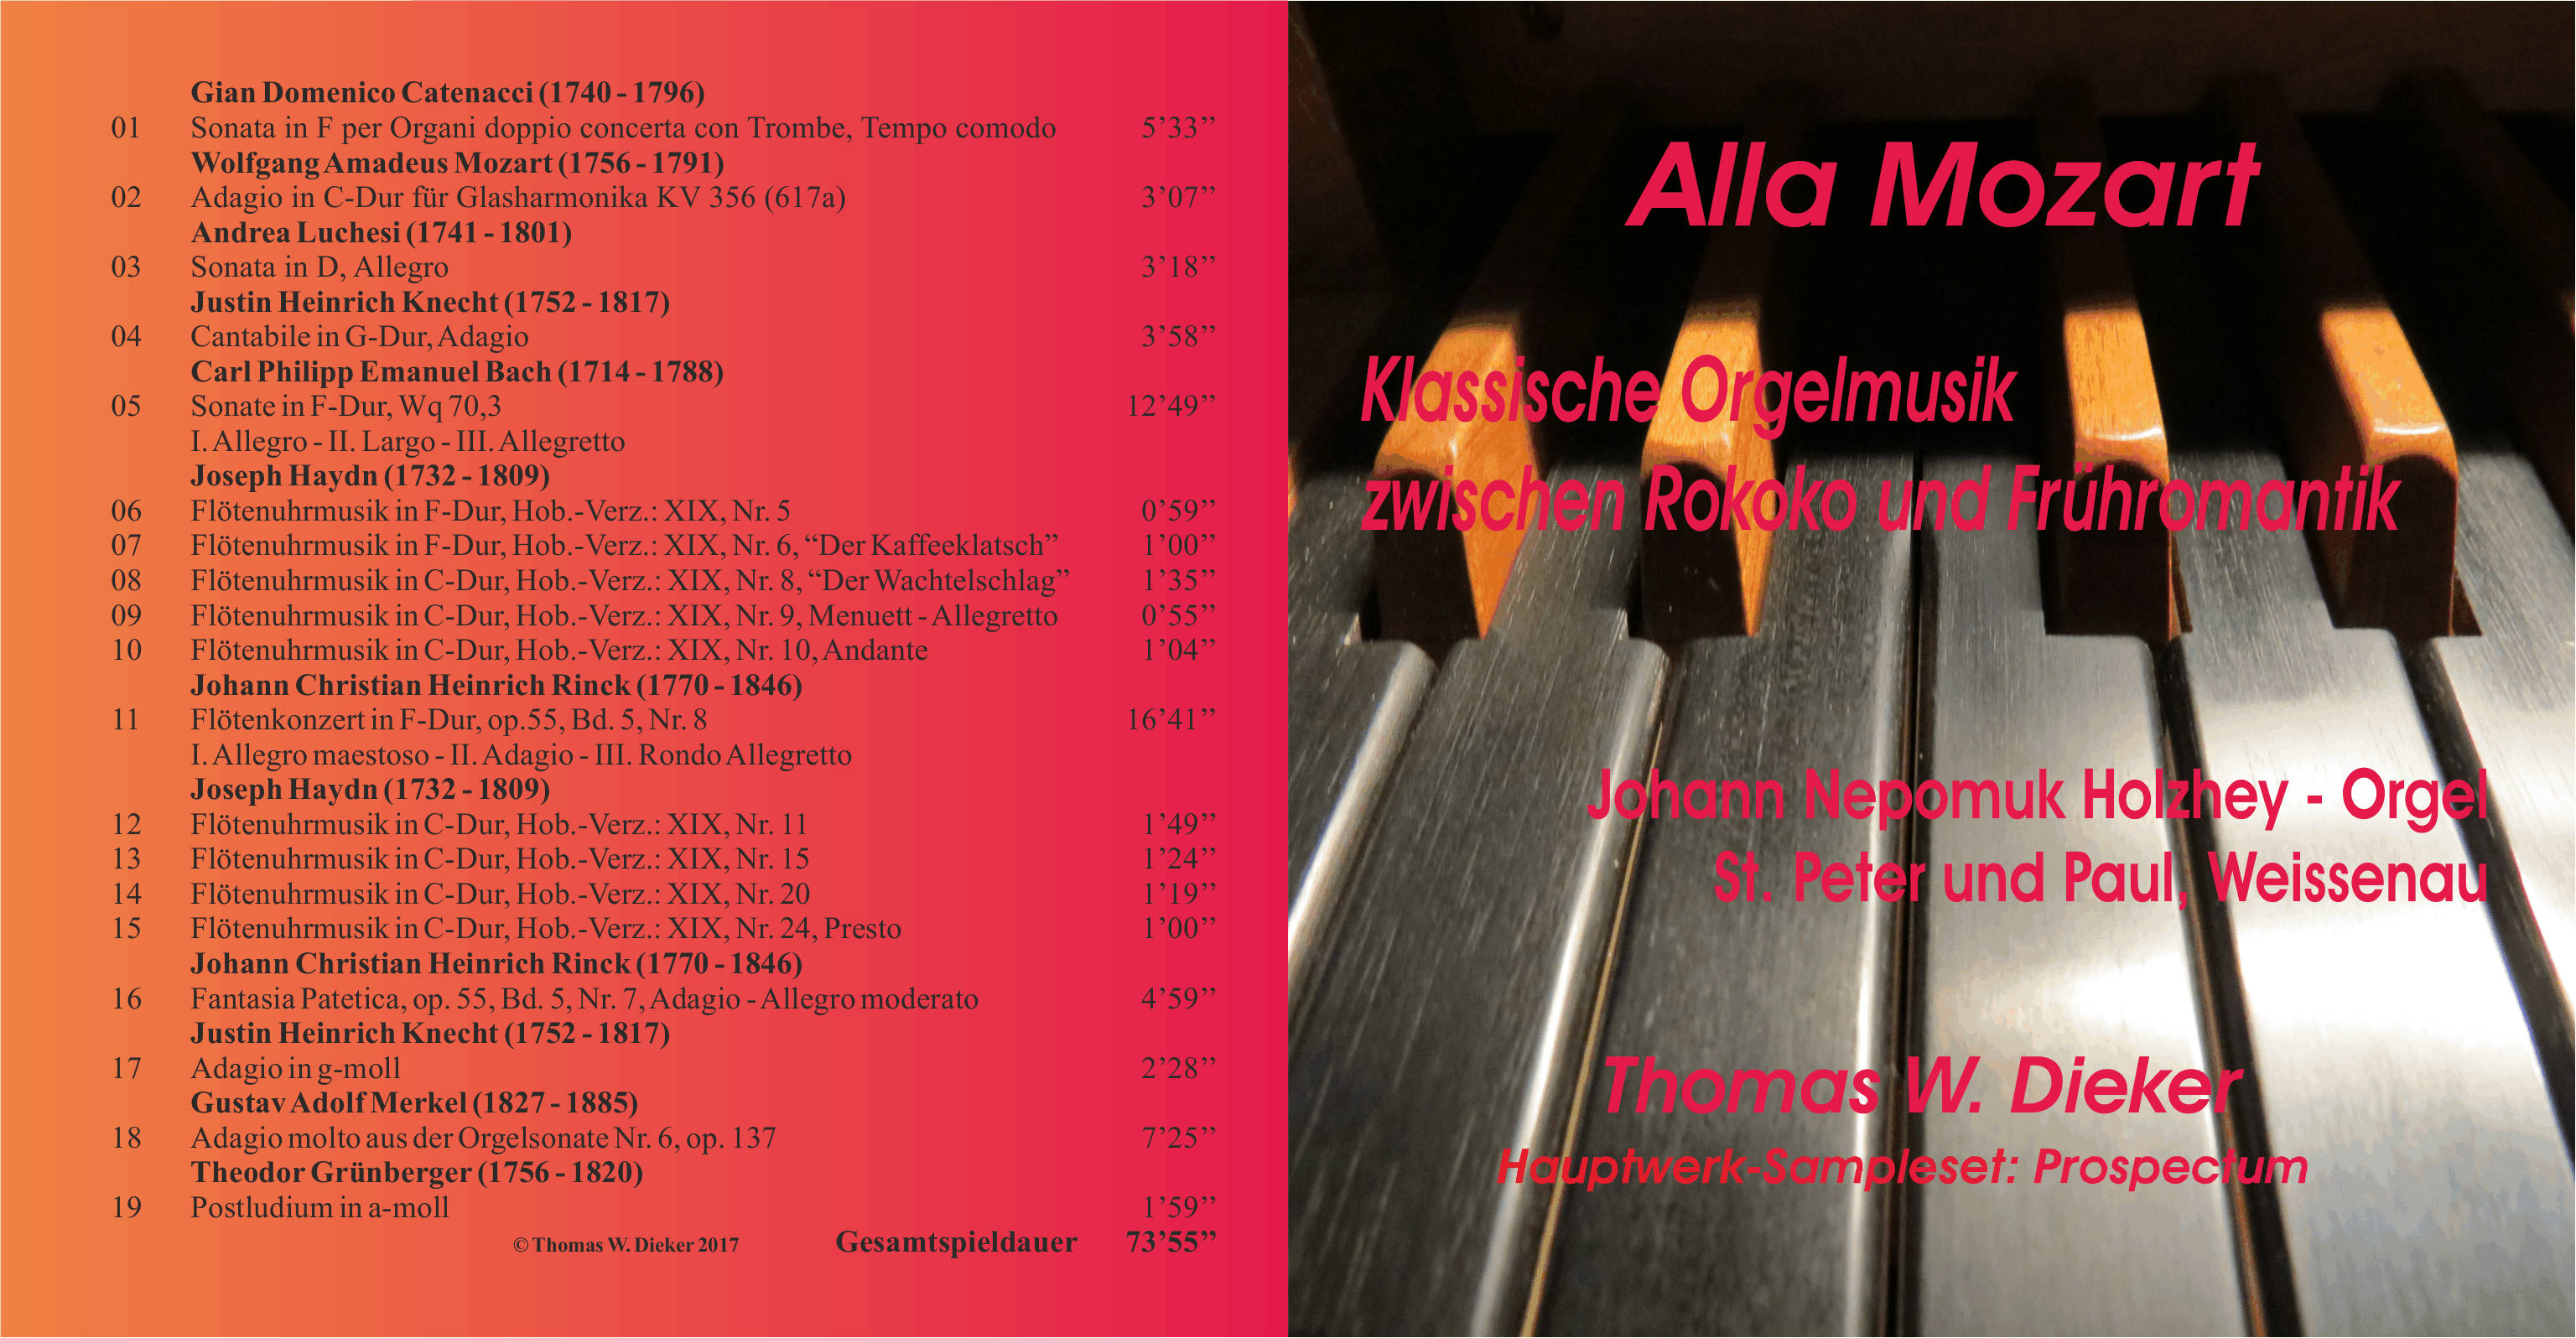 CD 2: Alla Mozart - Klassische Orgelmusik